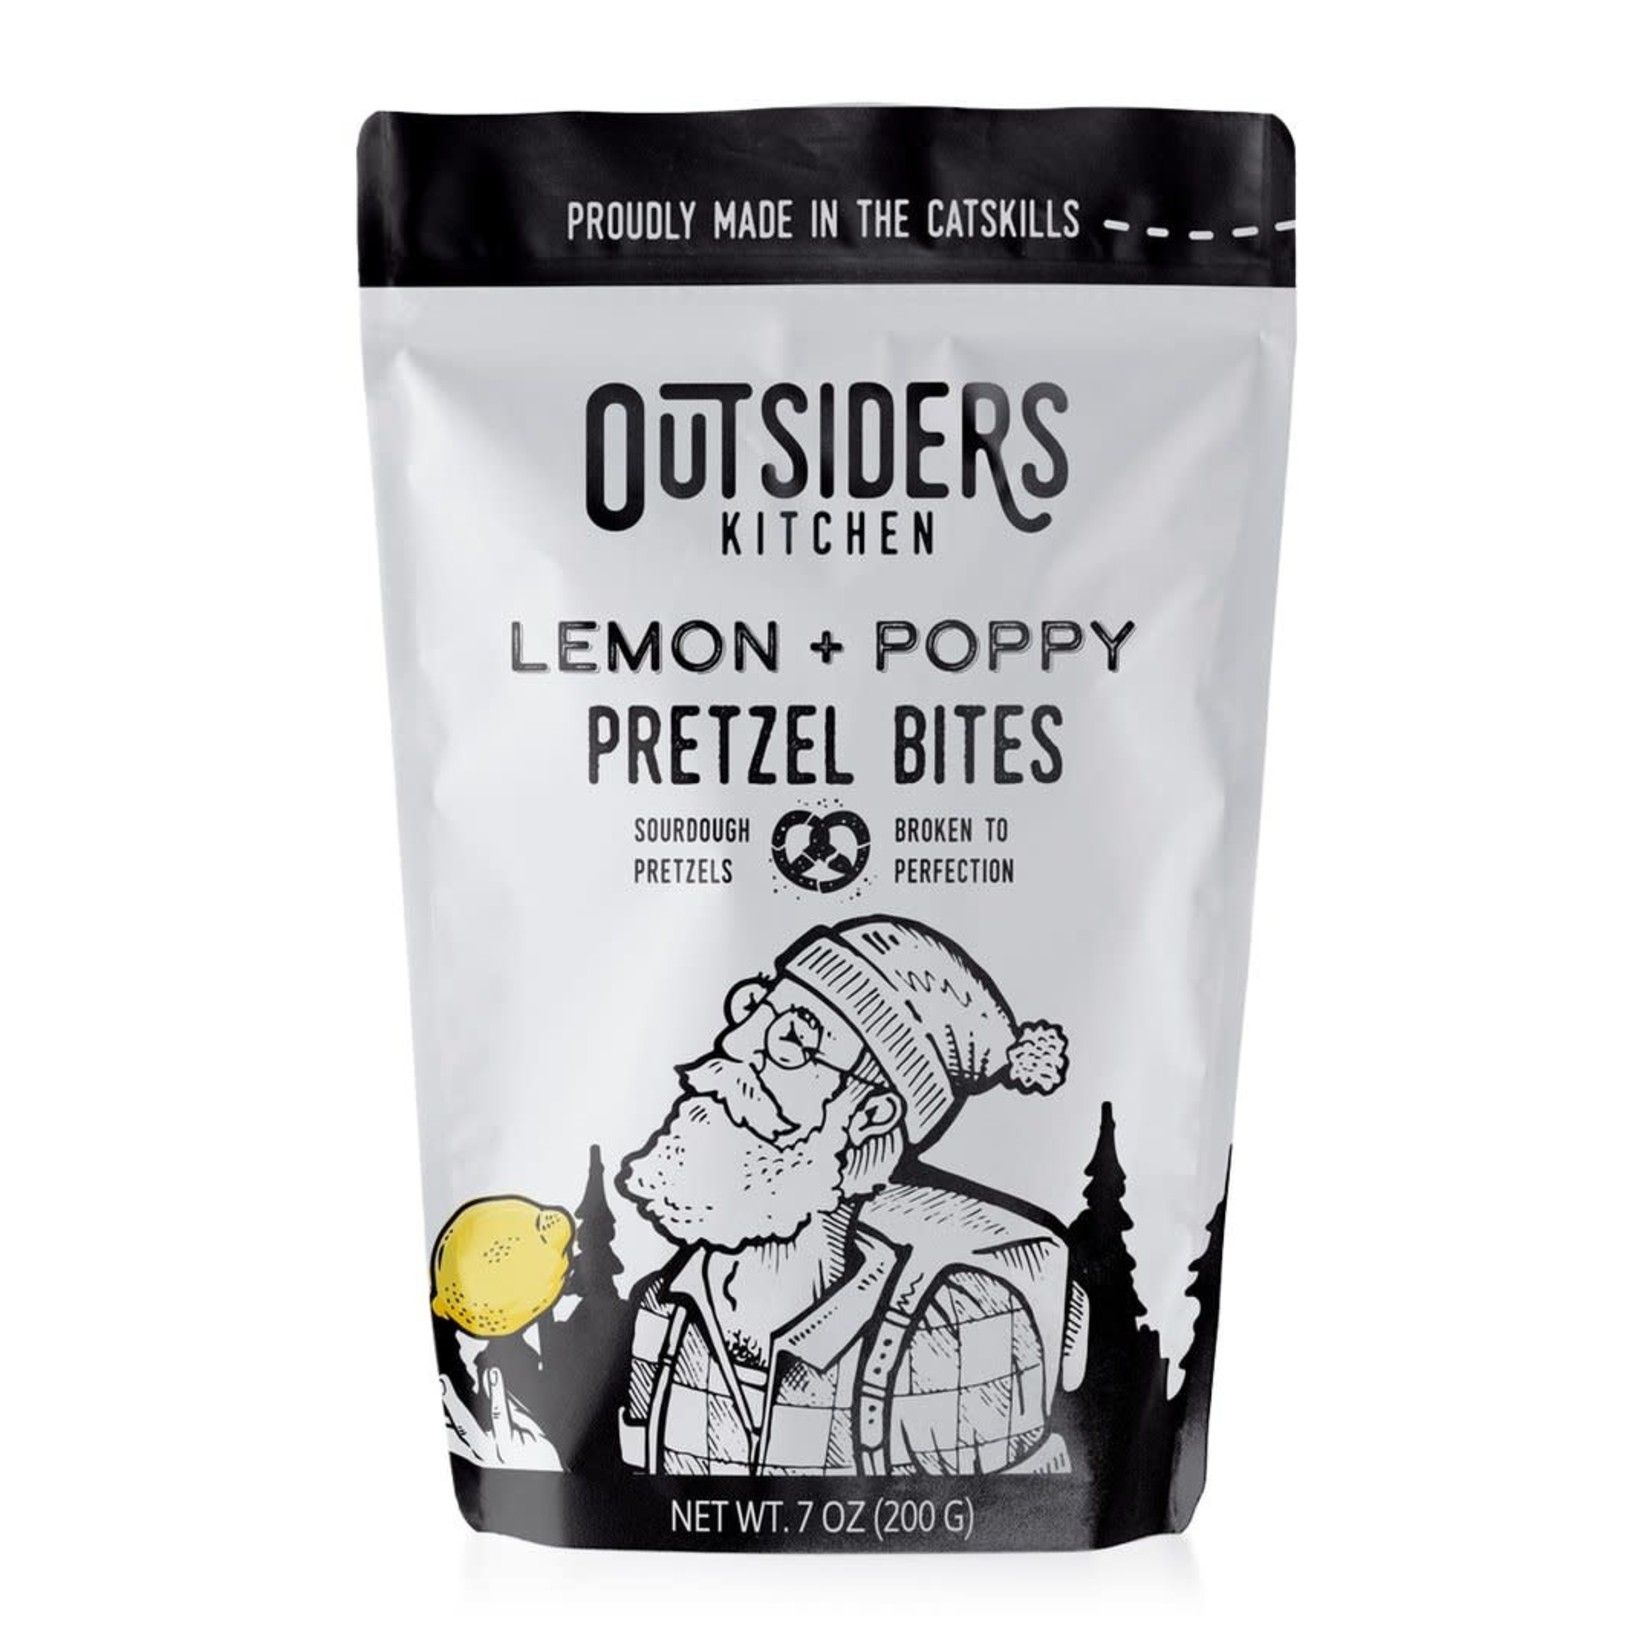 Outsiders Kitchen Pretzel Bites - lemon + poppy